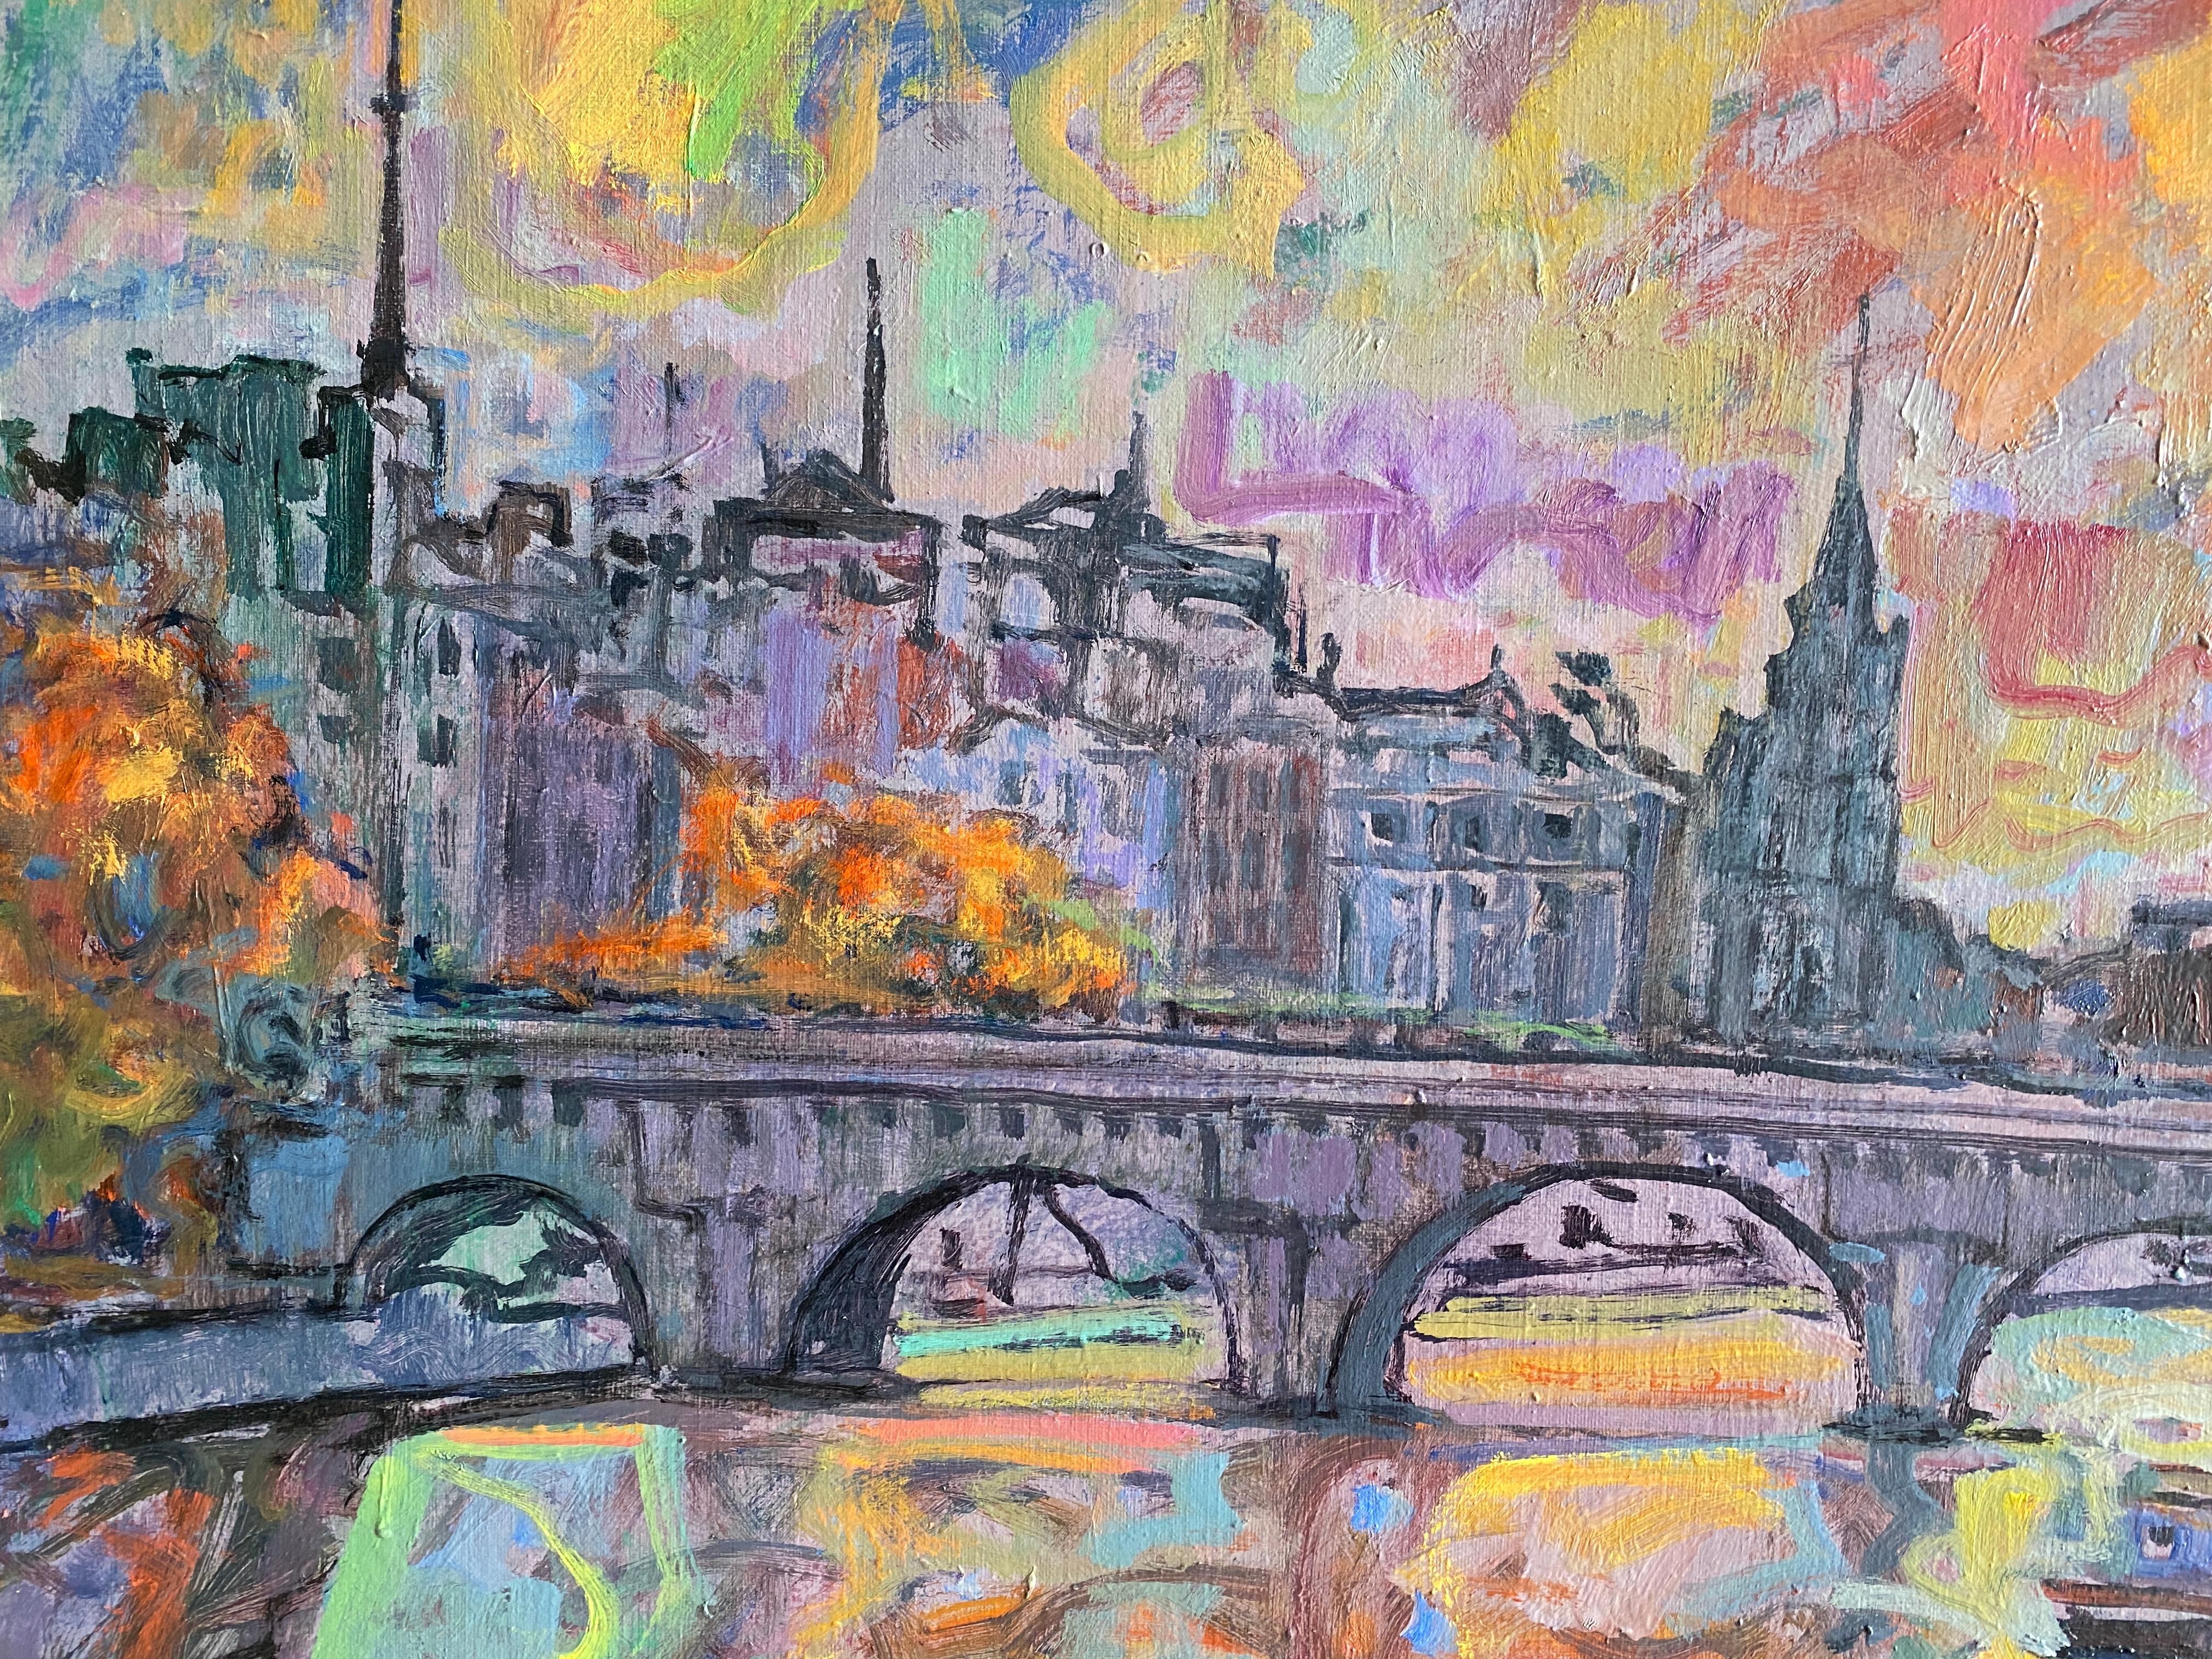 Le Pont Neuf - Paris.   
Öl auf Leinwand des spanischen Künstlers Joan Raset.
Maße mit Rahmen 84 cm H x 104 cm B x 4 cm T
Maße ohne Rahmen 73 cm H x 92 cm B x 2 cm T

Schöne Pariser Aussicht mit spektakulärem Licht.
Im Vordergrund das Wasser der